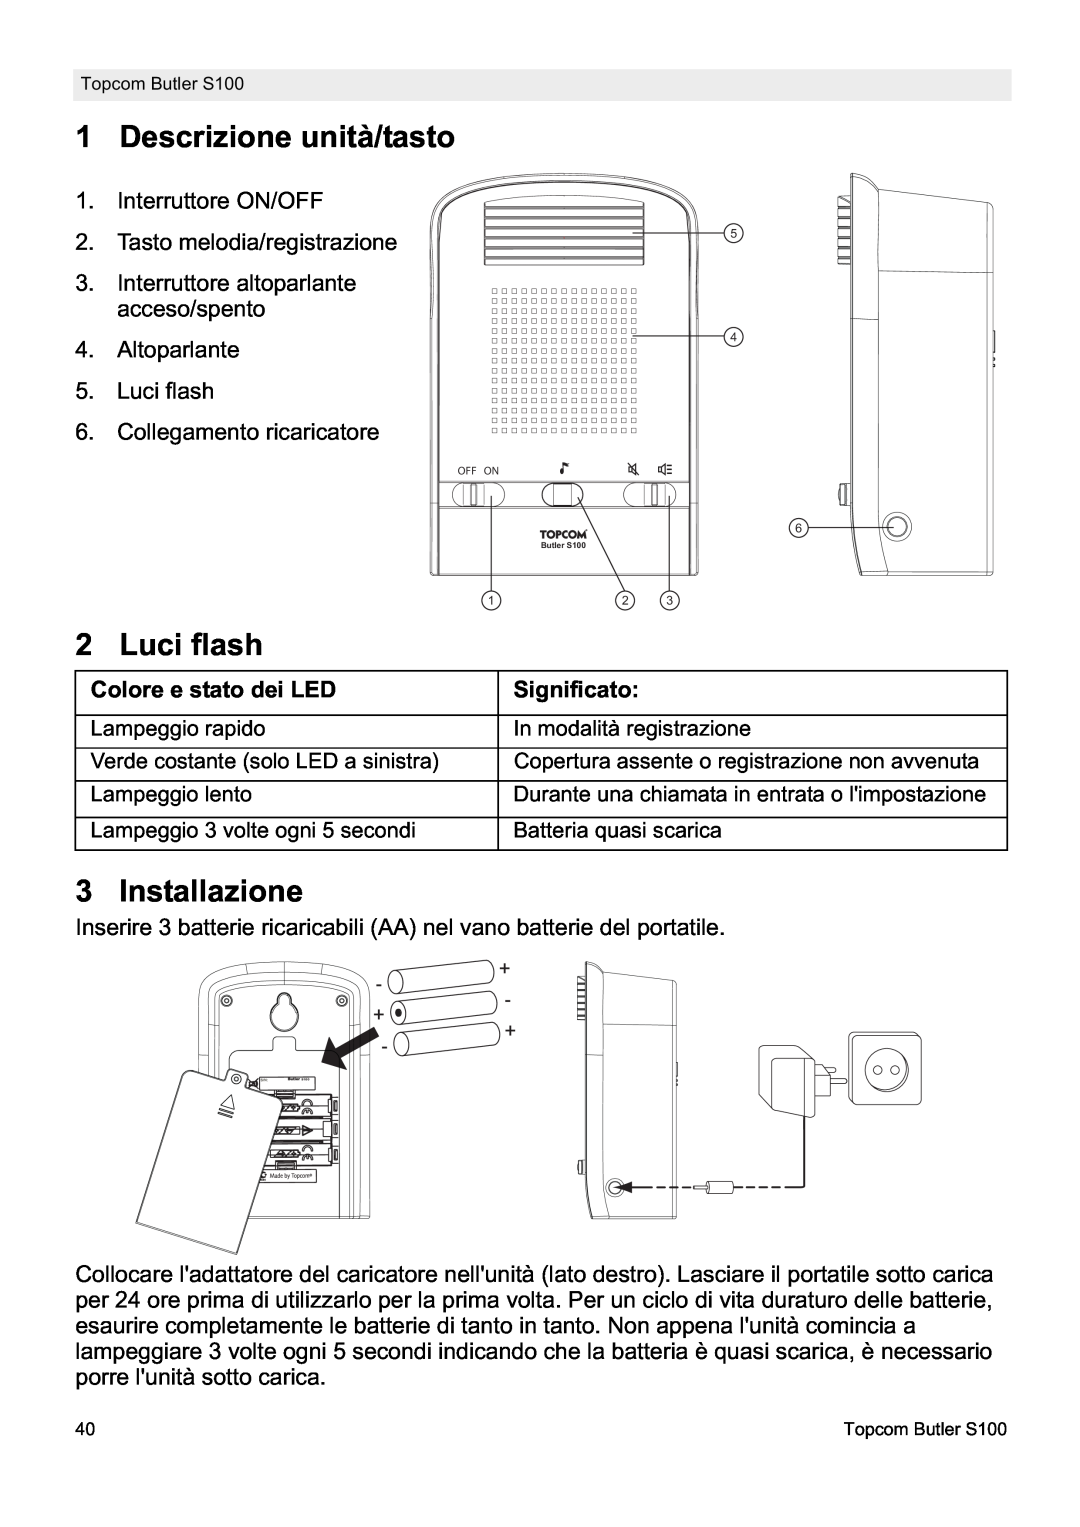 Topcom S100 manual do utilizador Descrizione unità/tasto, Luci flash, Installazione, Colore e stato dei LED, Significato 